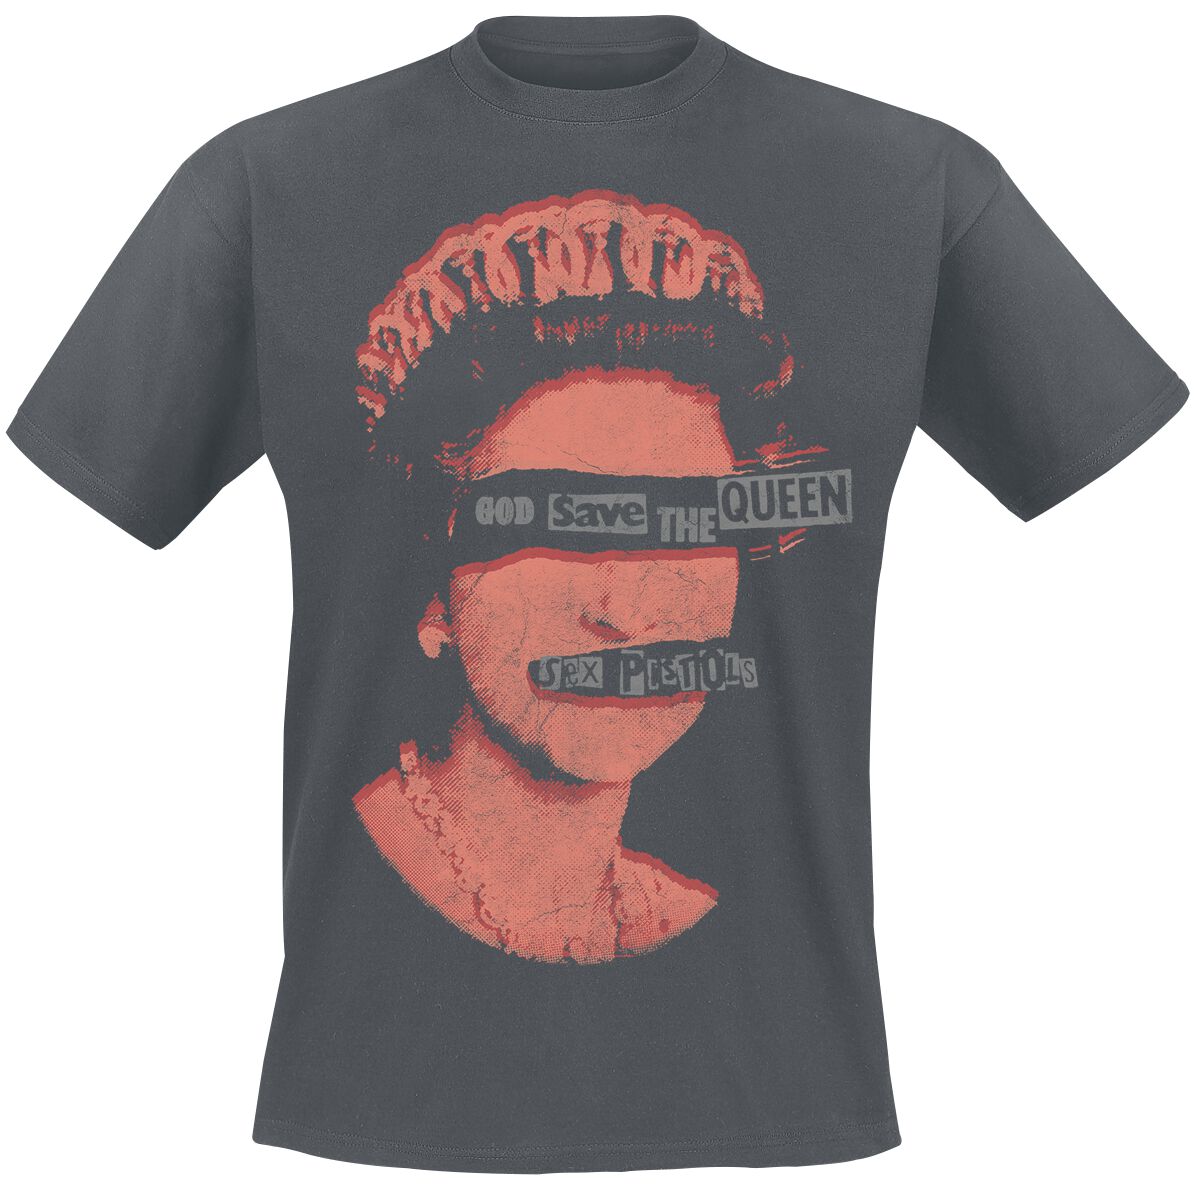 Sex Pistols T-Shirt - God Save The Queen - S bis XXL - für Männer - Größe L - dunkelgrau  - Lizenziertes Merchandise!